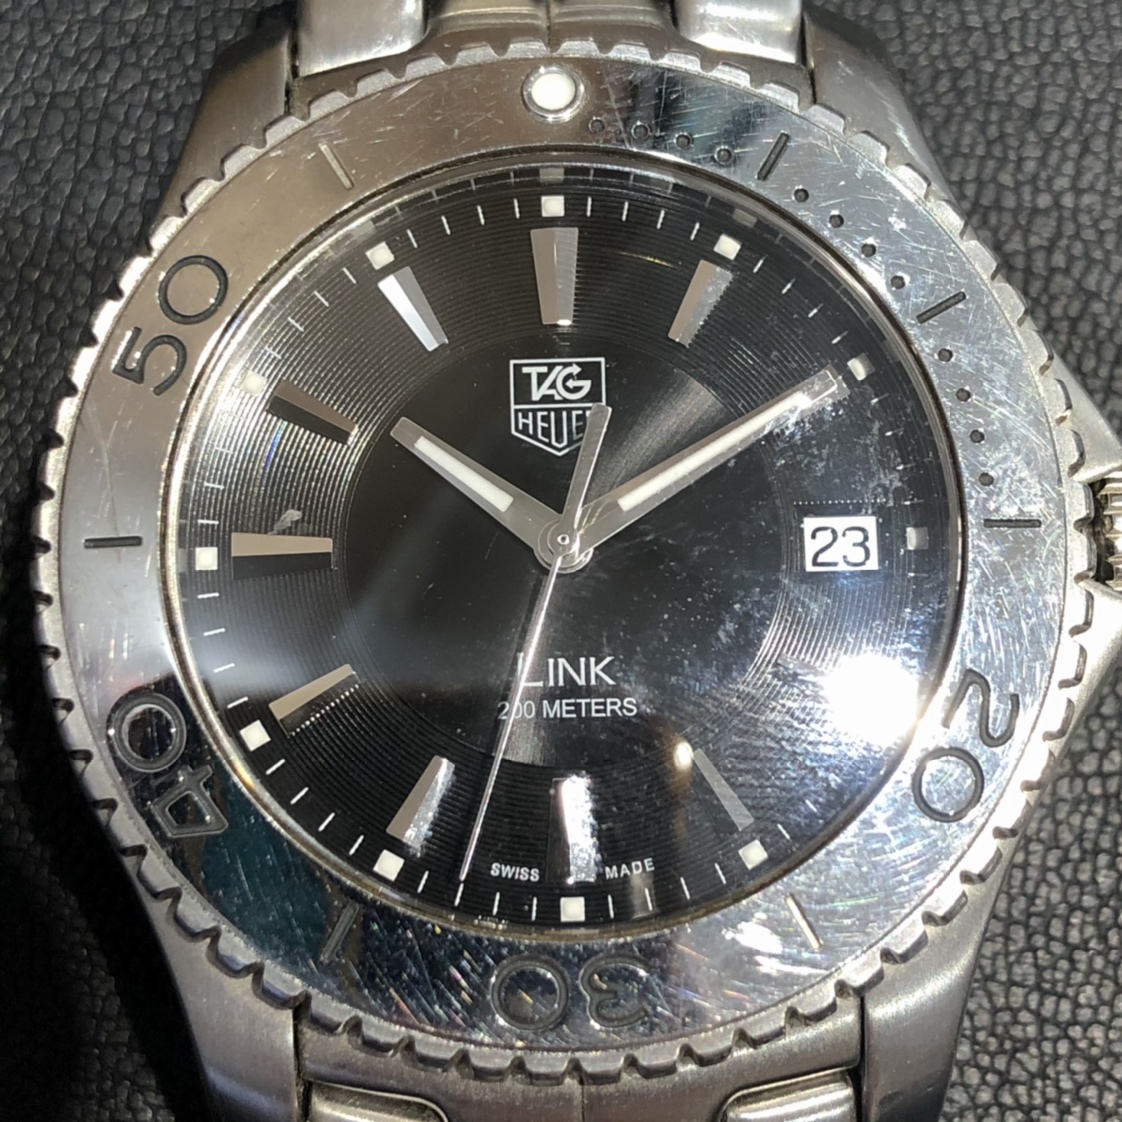 エコスタイル新宿店で、タグホイヤーのリンクのWJ1110-0のクオーツ時計を買取しました。 買取価格・実績 2020年12月4日公開情報